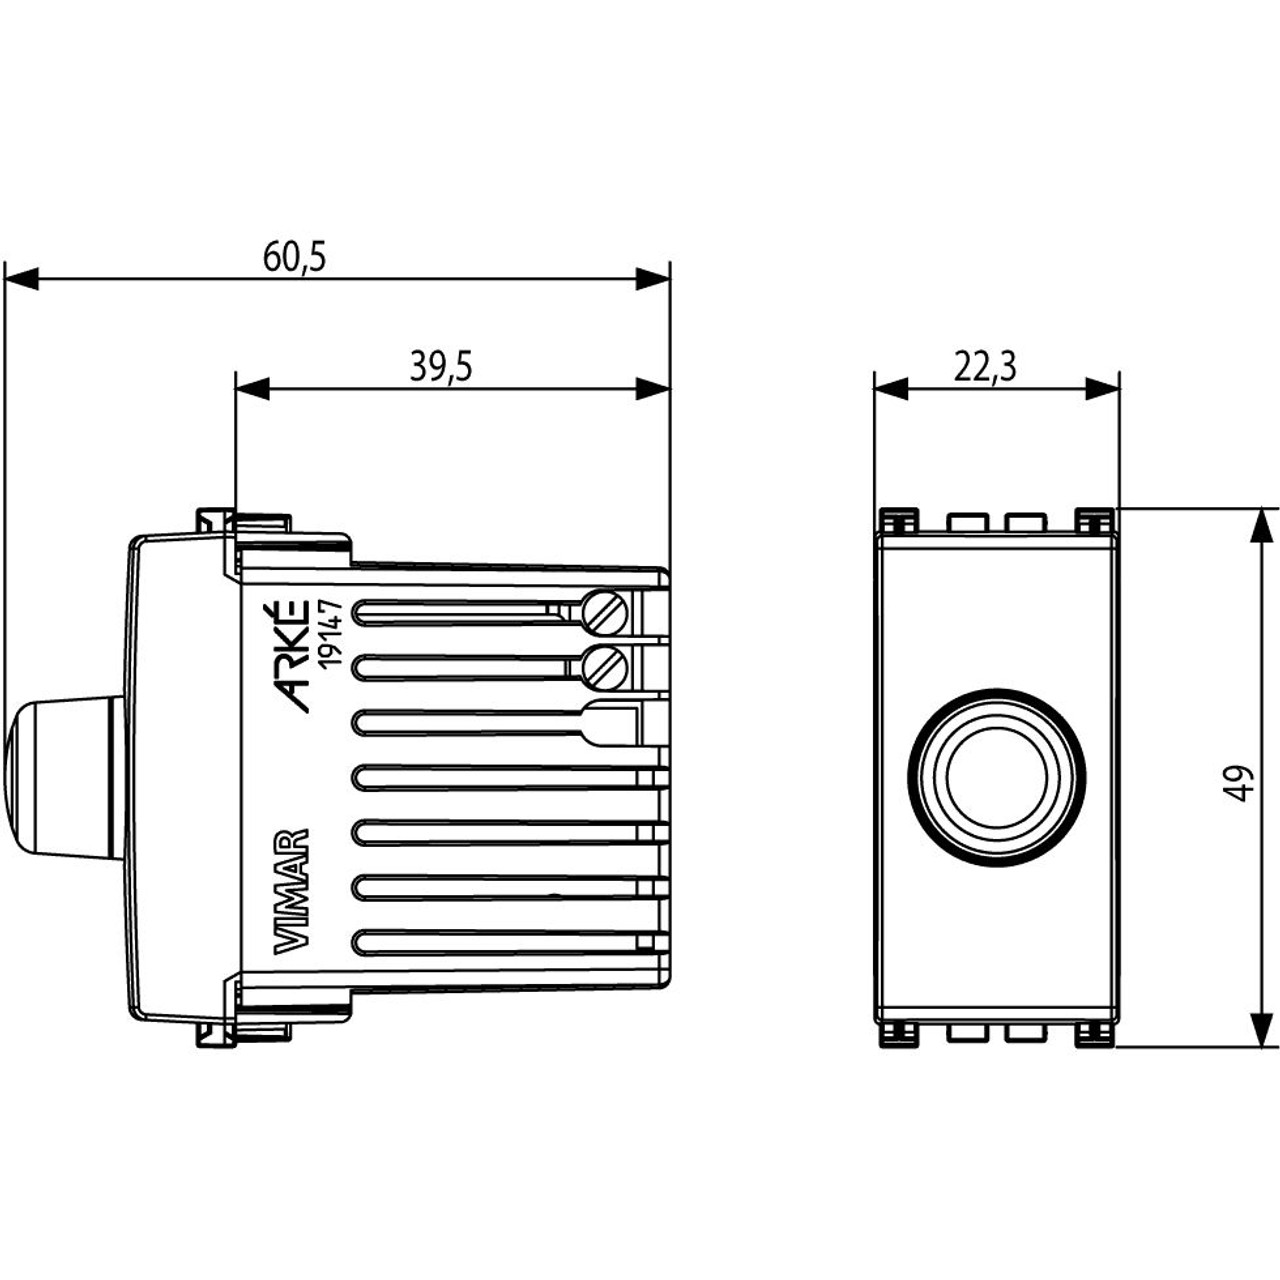 Vimar - Arké 19147 Dimmer Switch - 120V, 30-500W, 30-300V, 50-60 Hz - Apollo Lighting